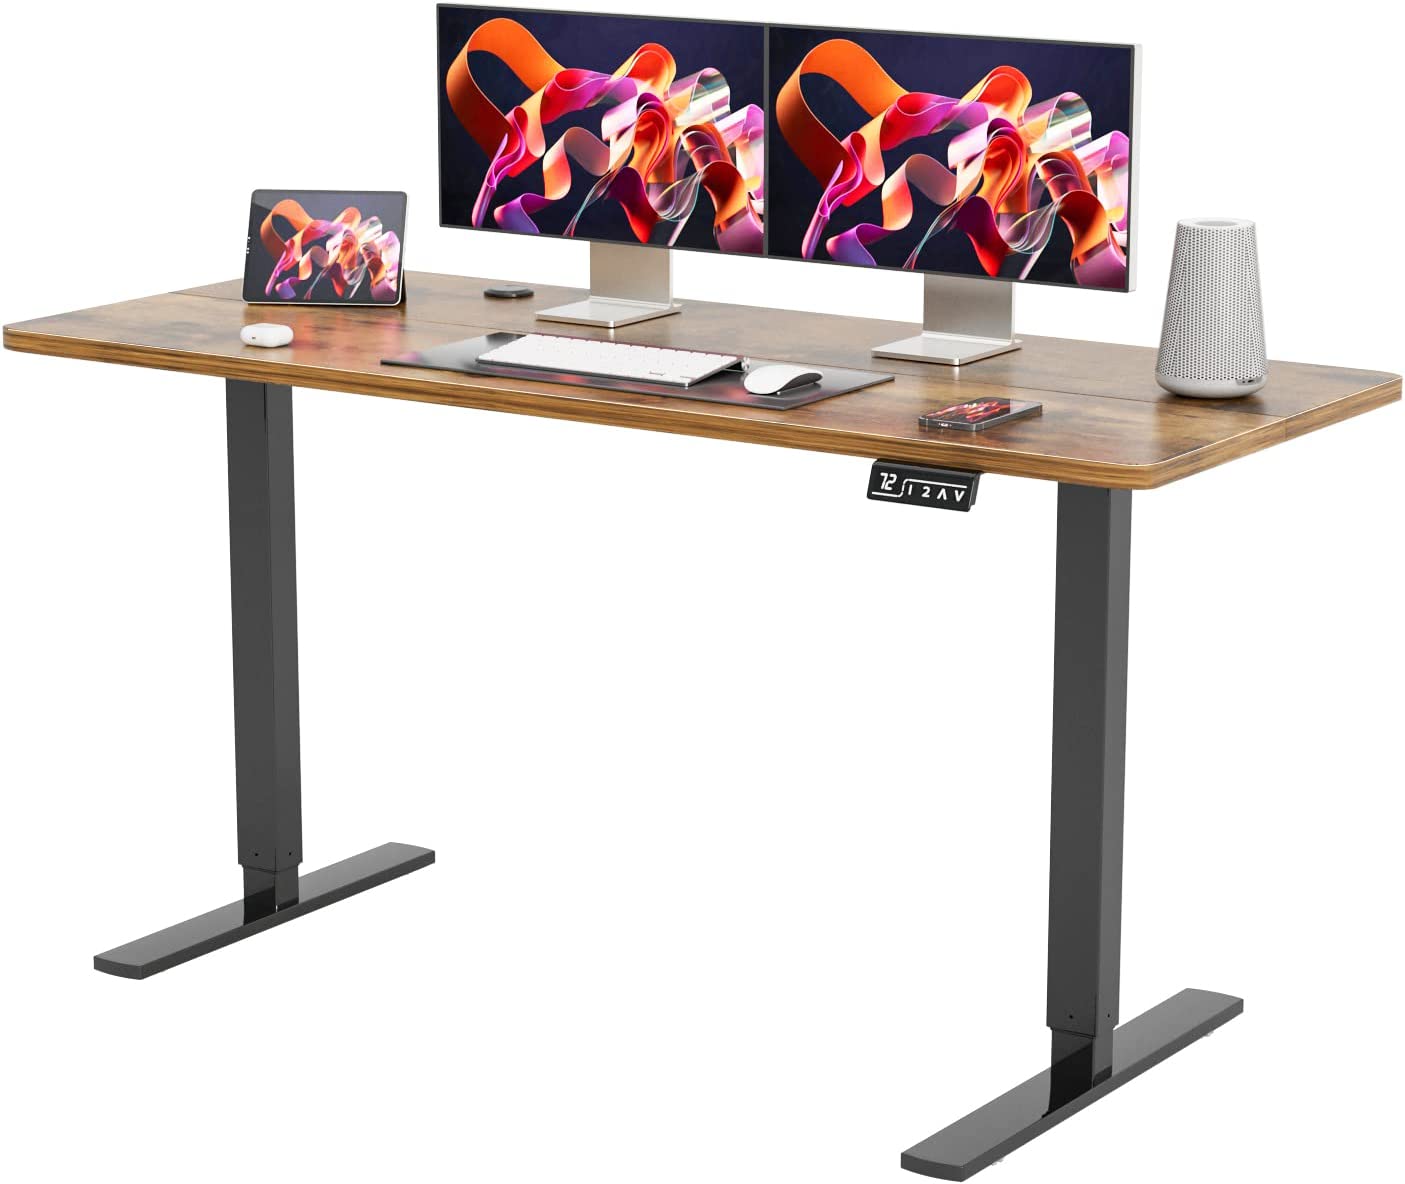 yeshomy adjustable standing desk